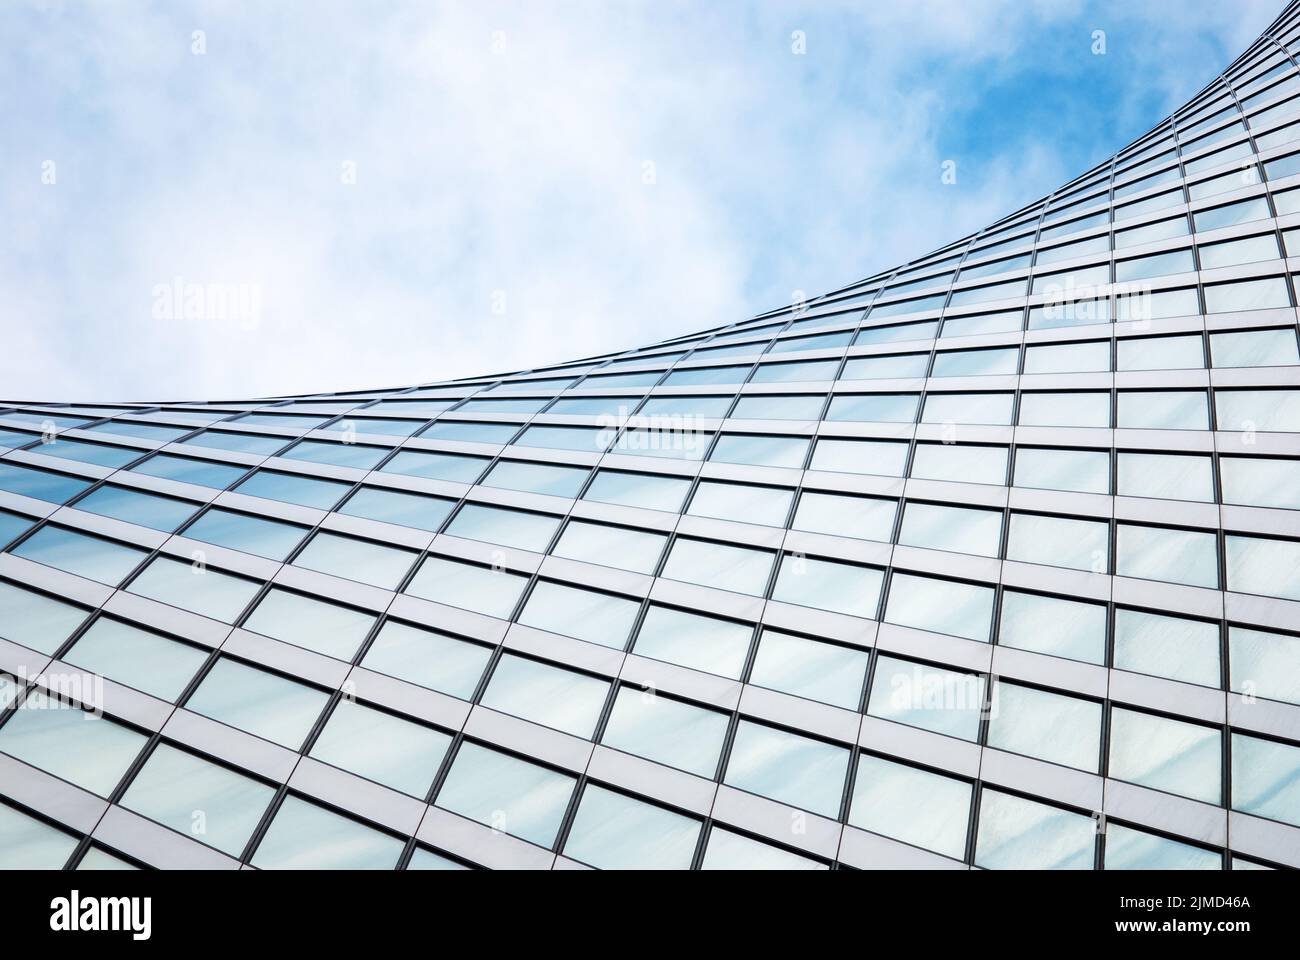 Abstrakte moderne Architektur, Glasbaustruktur, wellenförmige Gebäudedetails in blauem Himmel Stockfoto